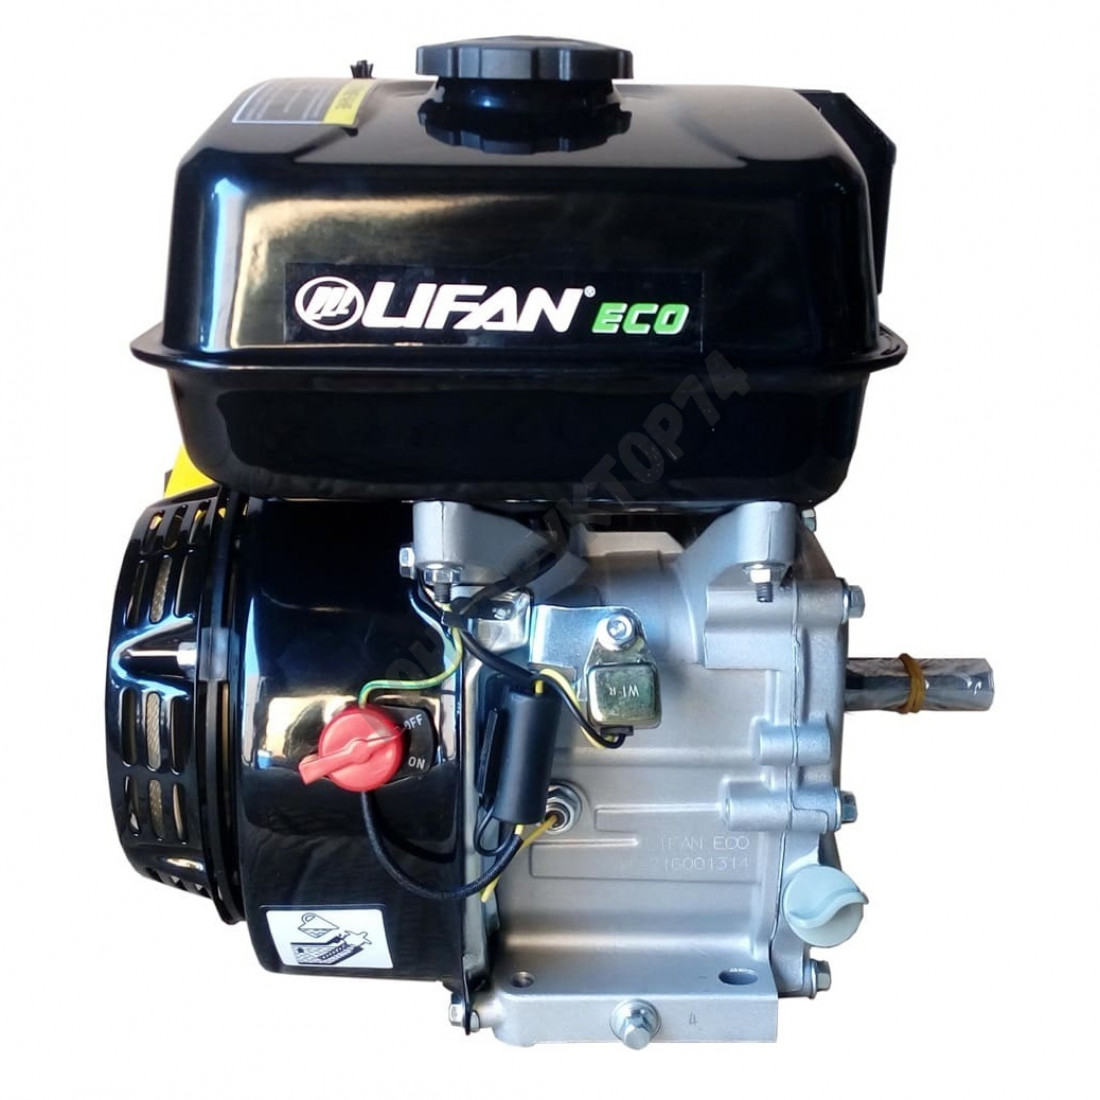 Купить двигатель лифан 6.5 л с. Lifan 168f-2 Eco. Двигатель Lifan 168f-2. Двигатель бензиновый Lifan 168f-2d (6,5 л.с.). Двигатель Lifan 6,5 л.с. 168f-2.